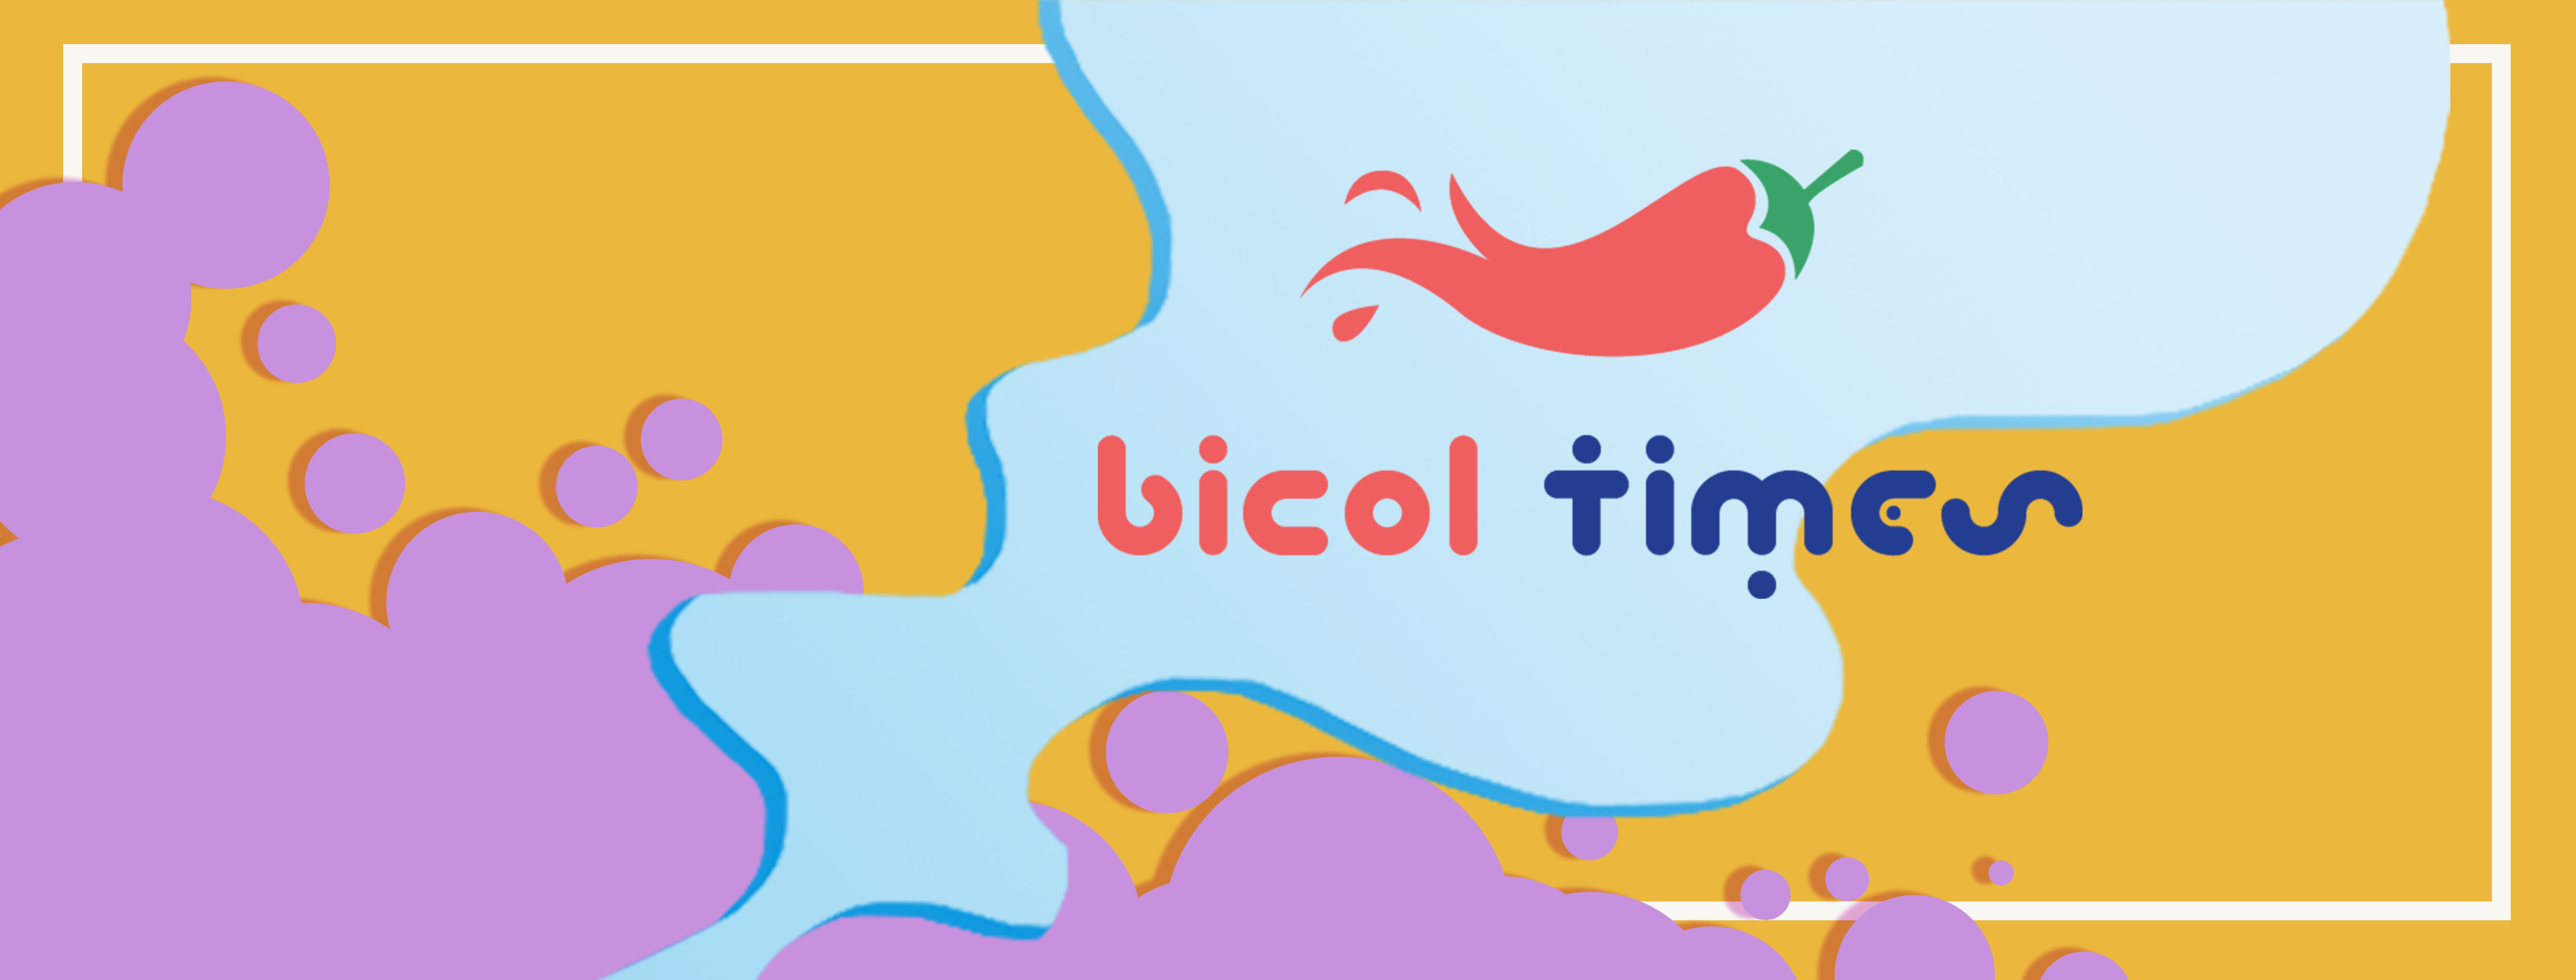 Bicol Times